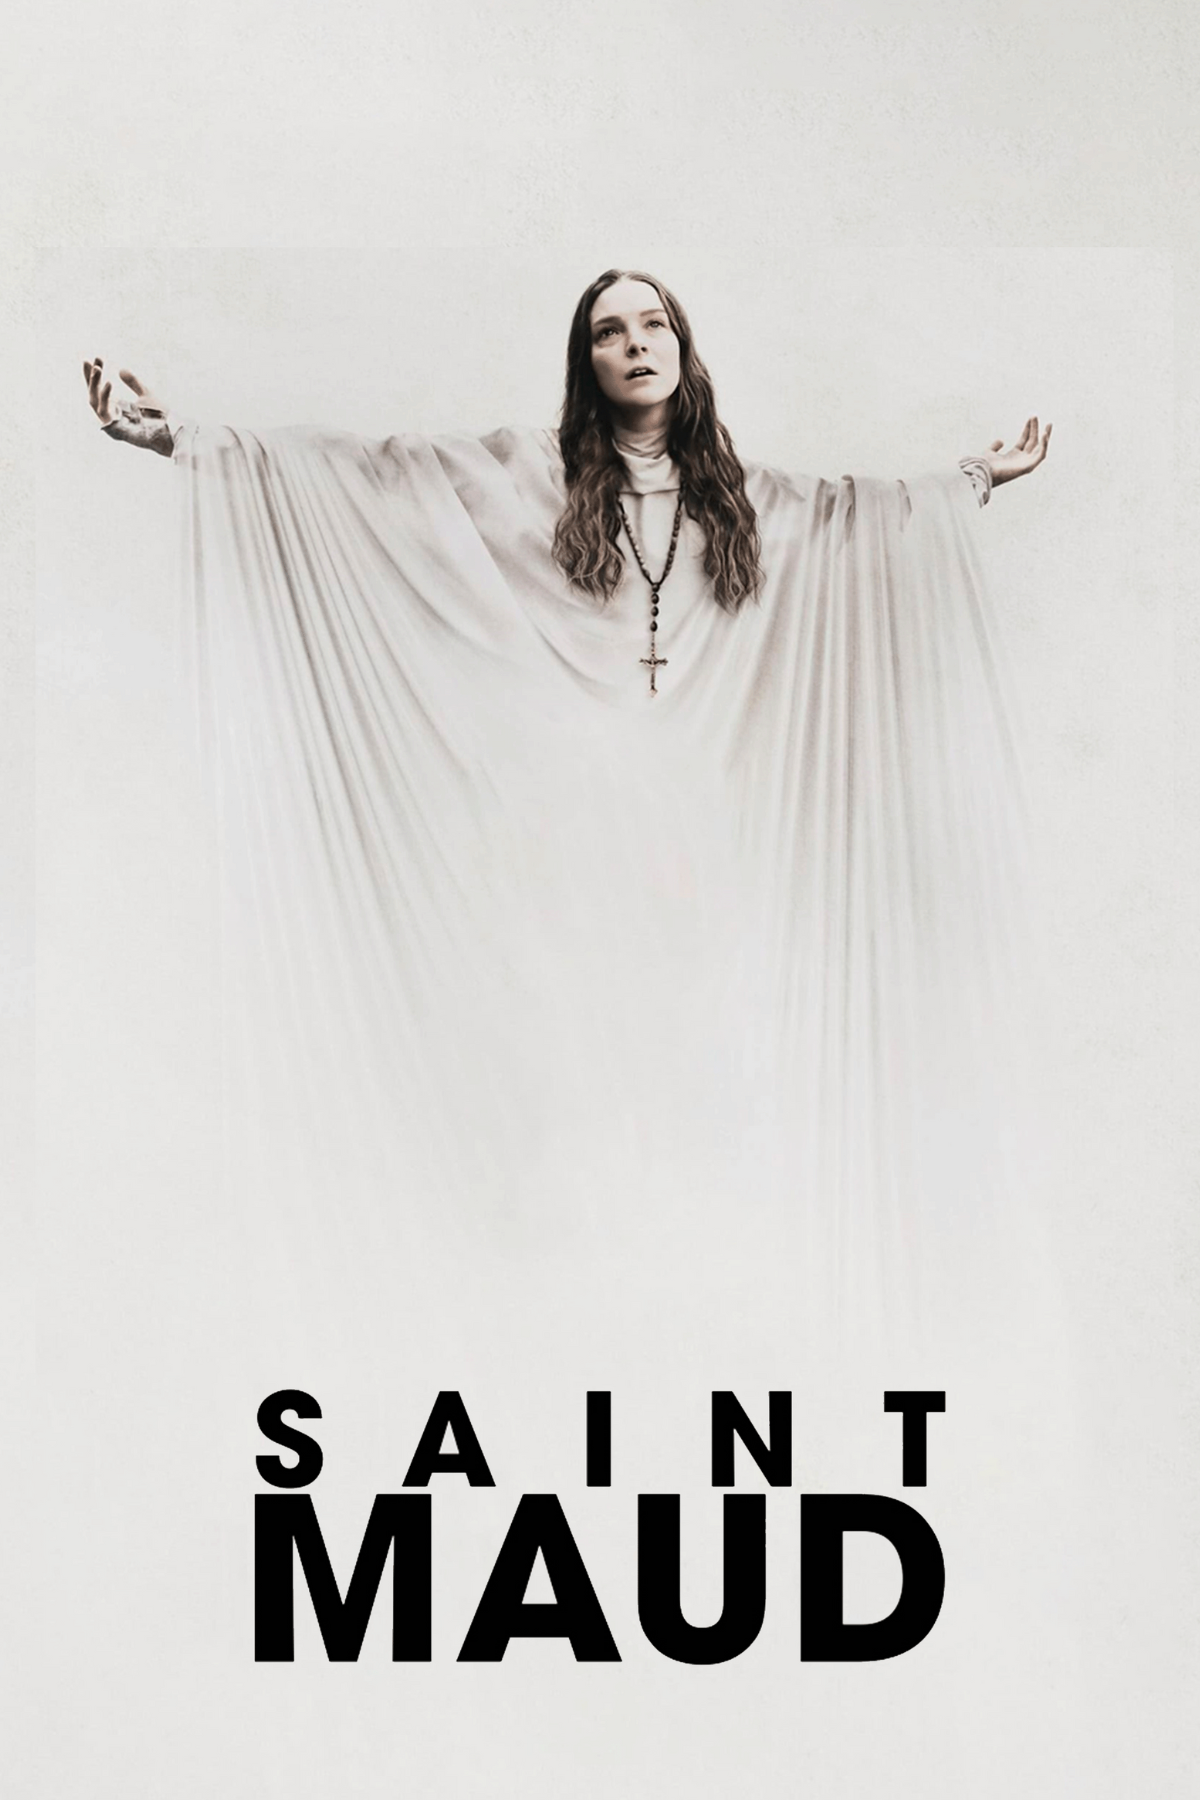 saint maud review movie 2020 a24 horror film